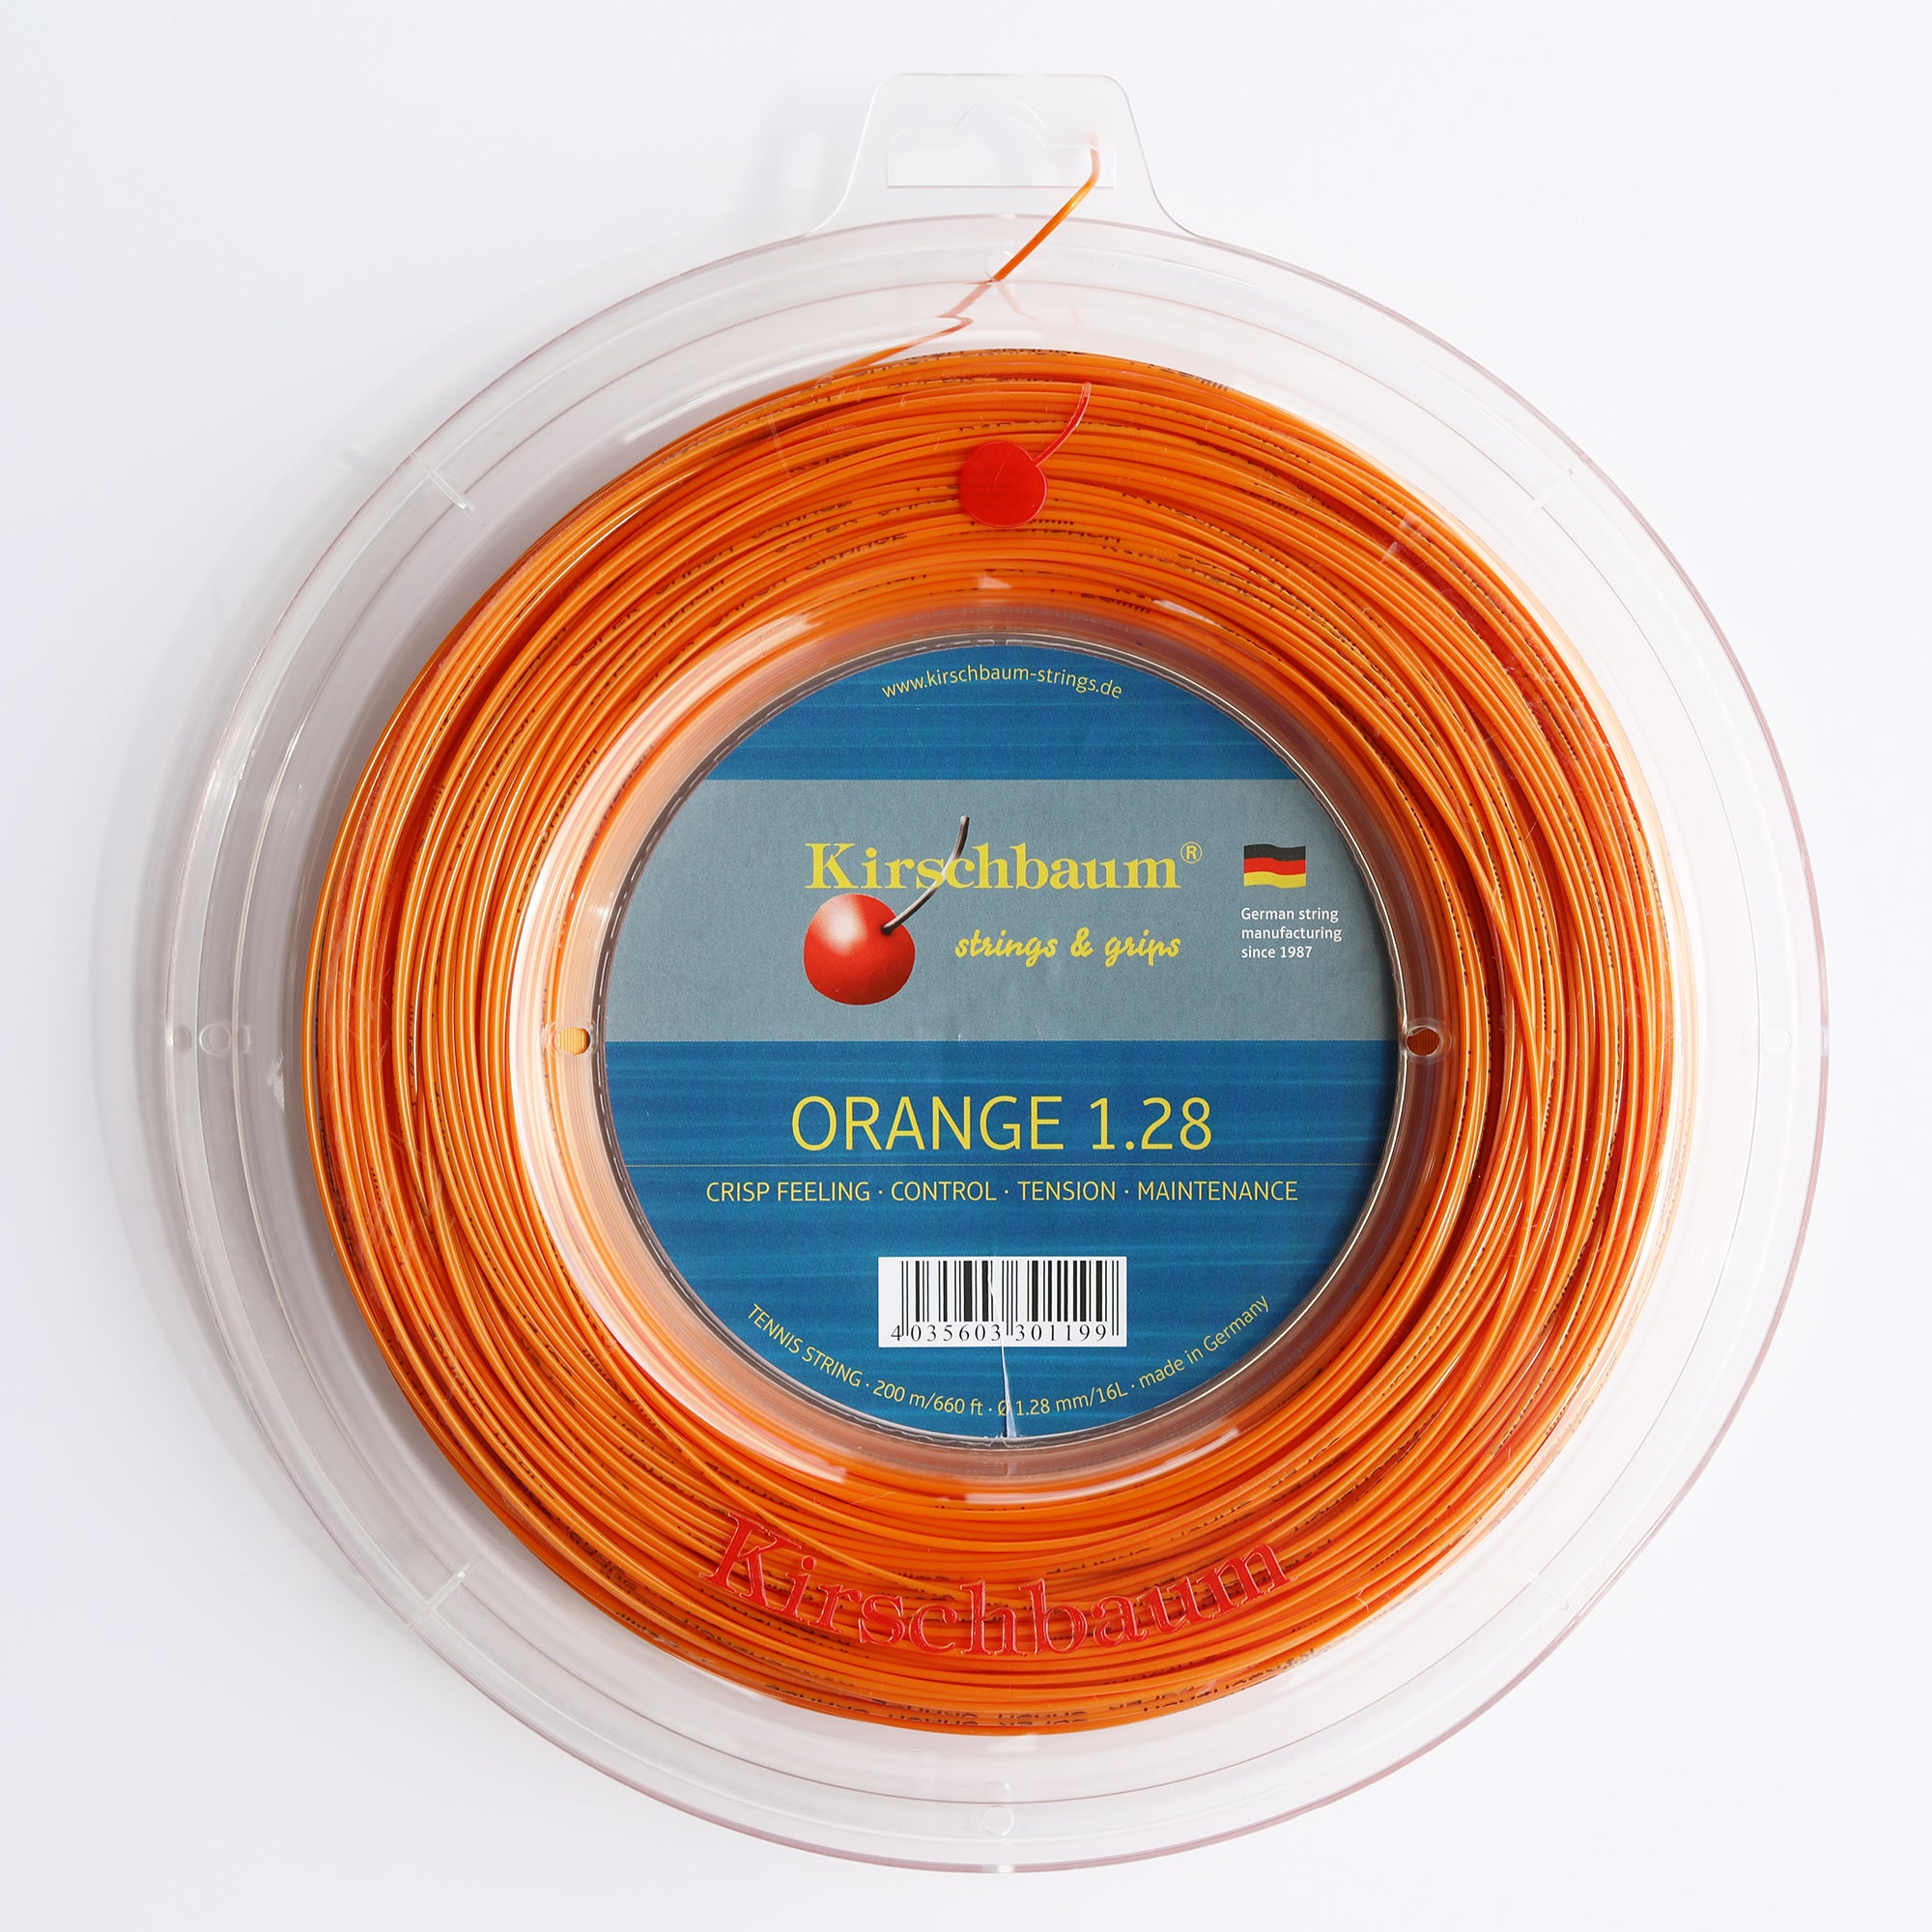 Kirschbaum Orange Tennis Racquet String, Reel 660ft (200M) Orange